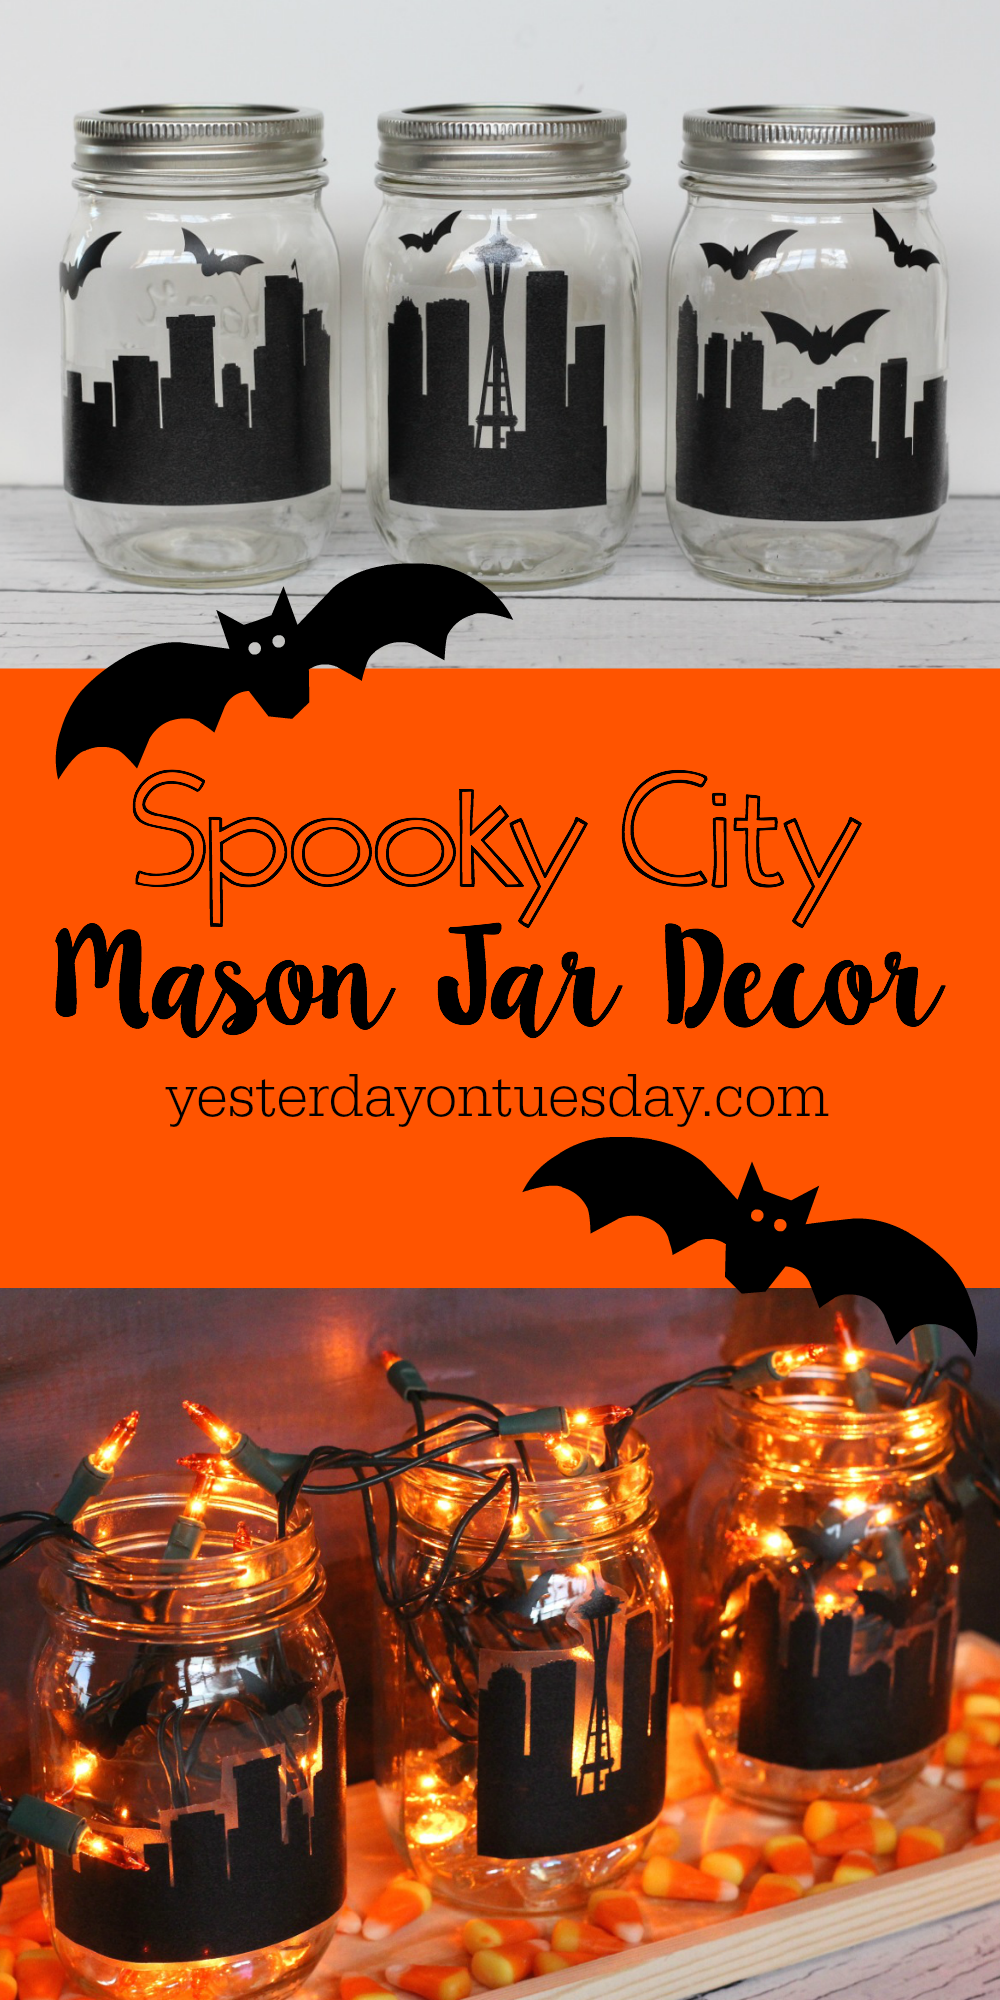 Spooky City Mason Jar Decor